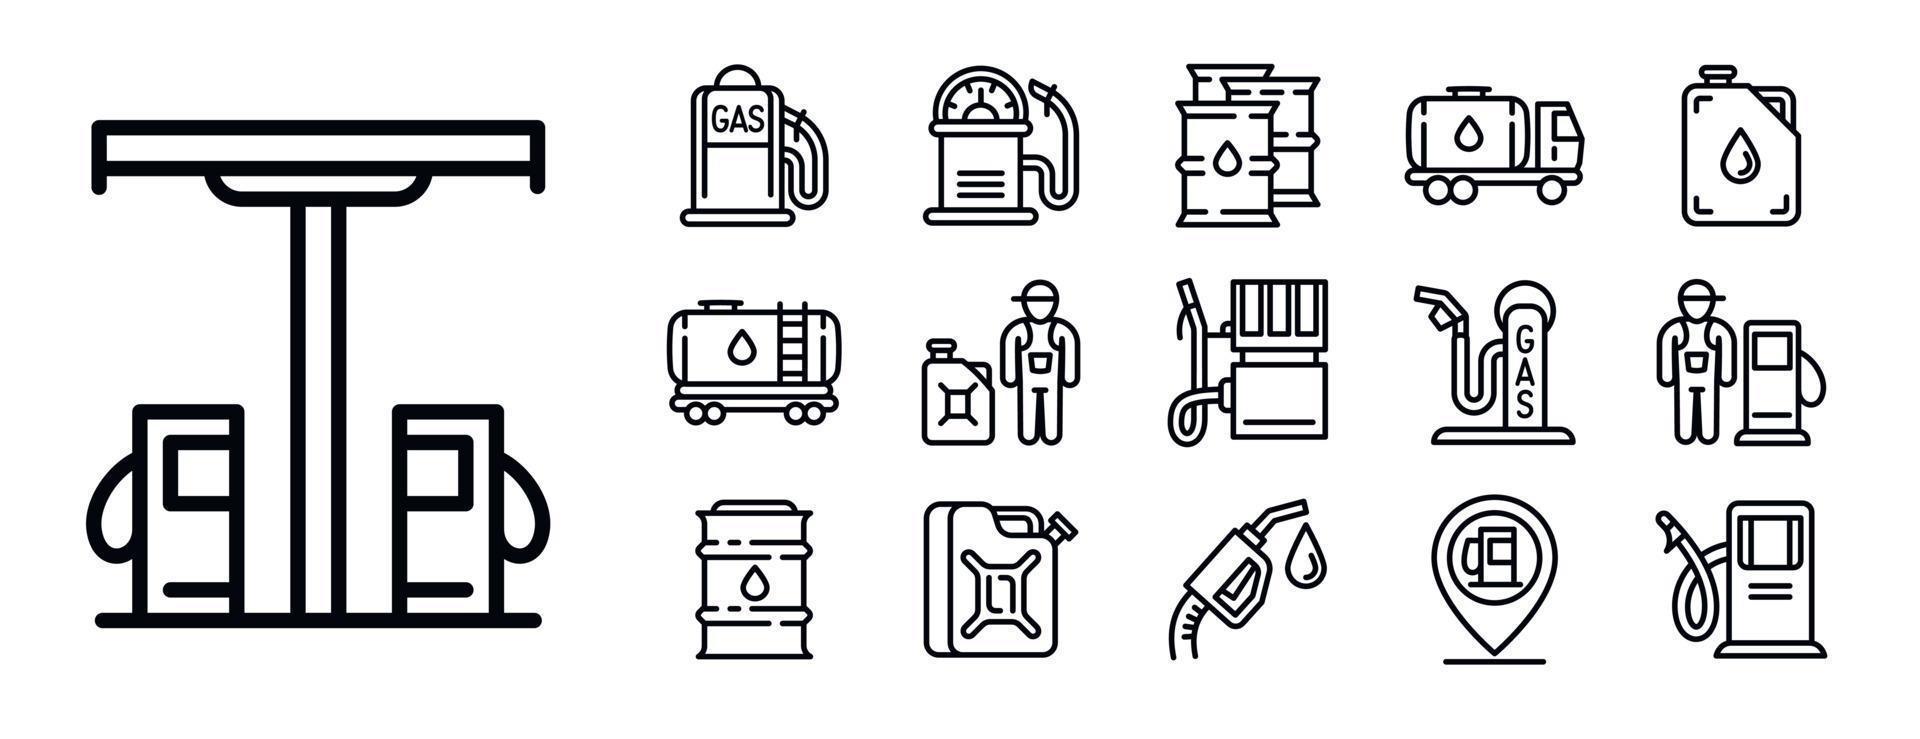 conjunto de ícones de posto de gasolina, estilo de estrutura de tópicos vetor